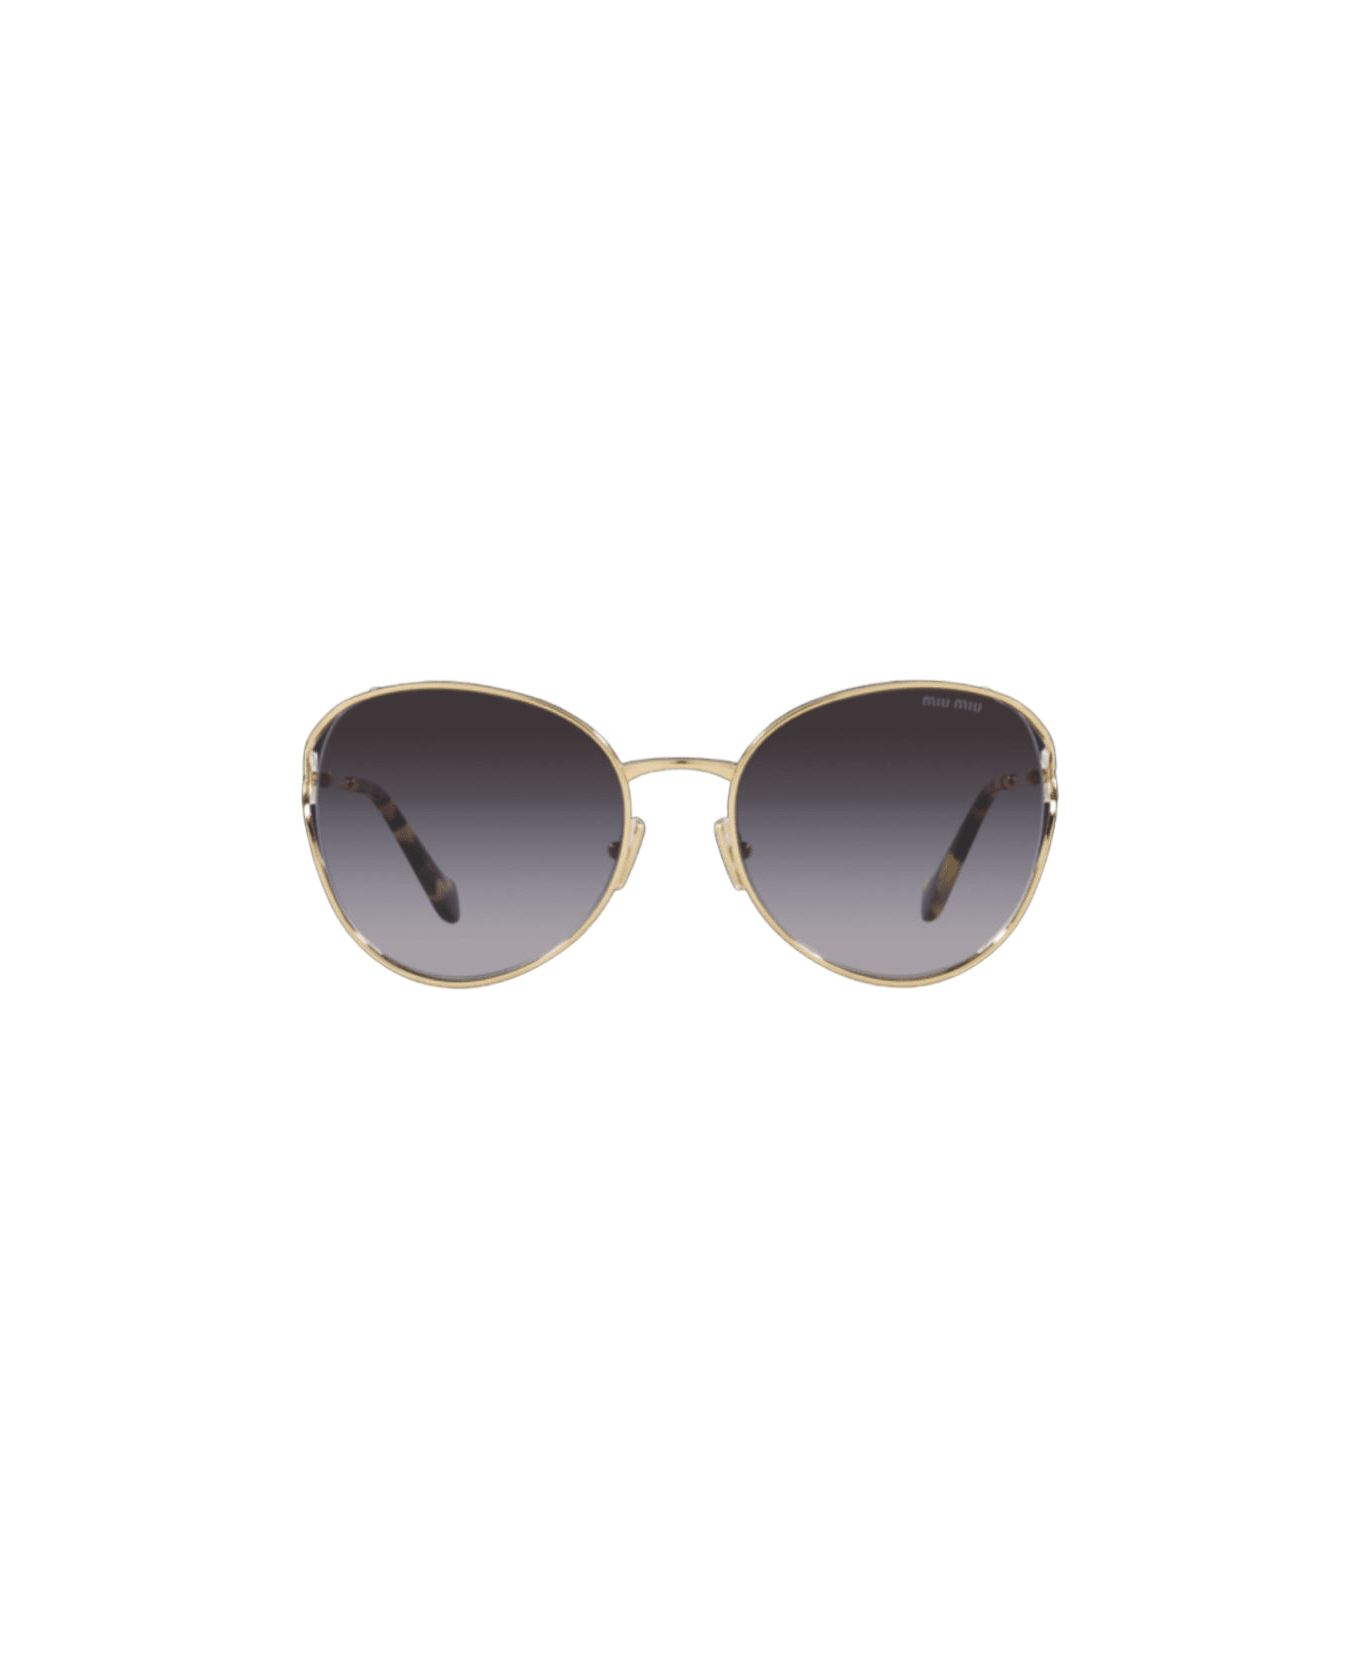 Miu Miu Eyewear 0mu 53ys - Gold Sunglasses